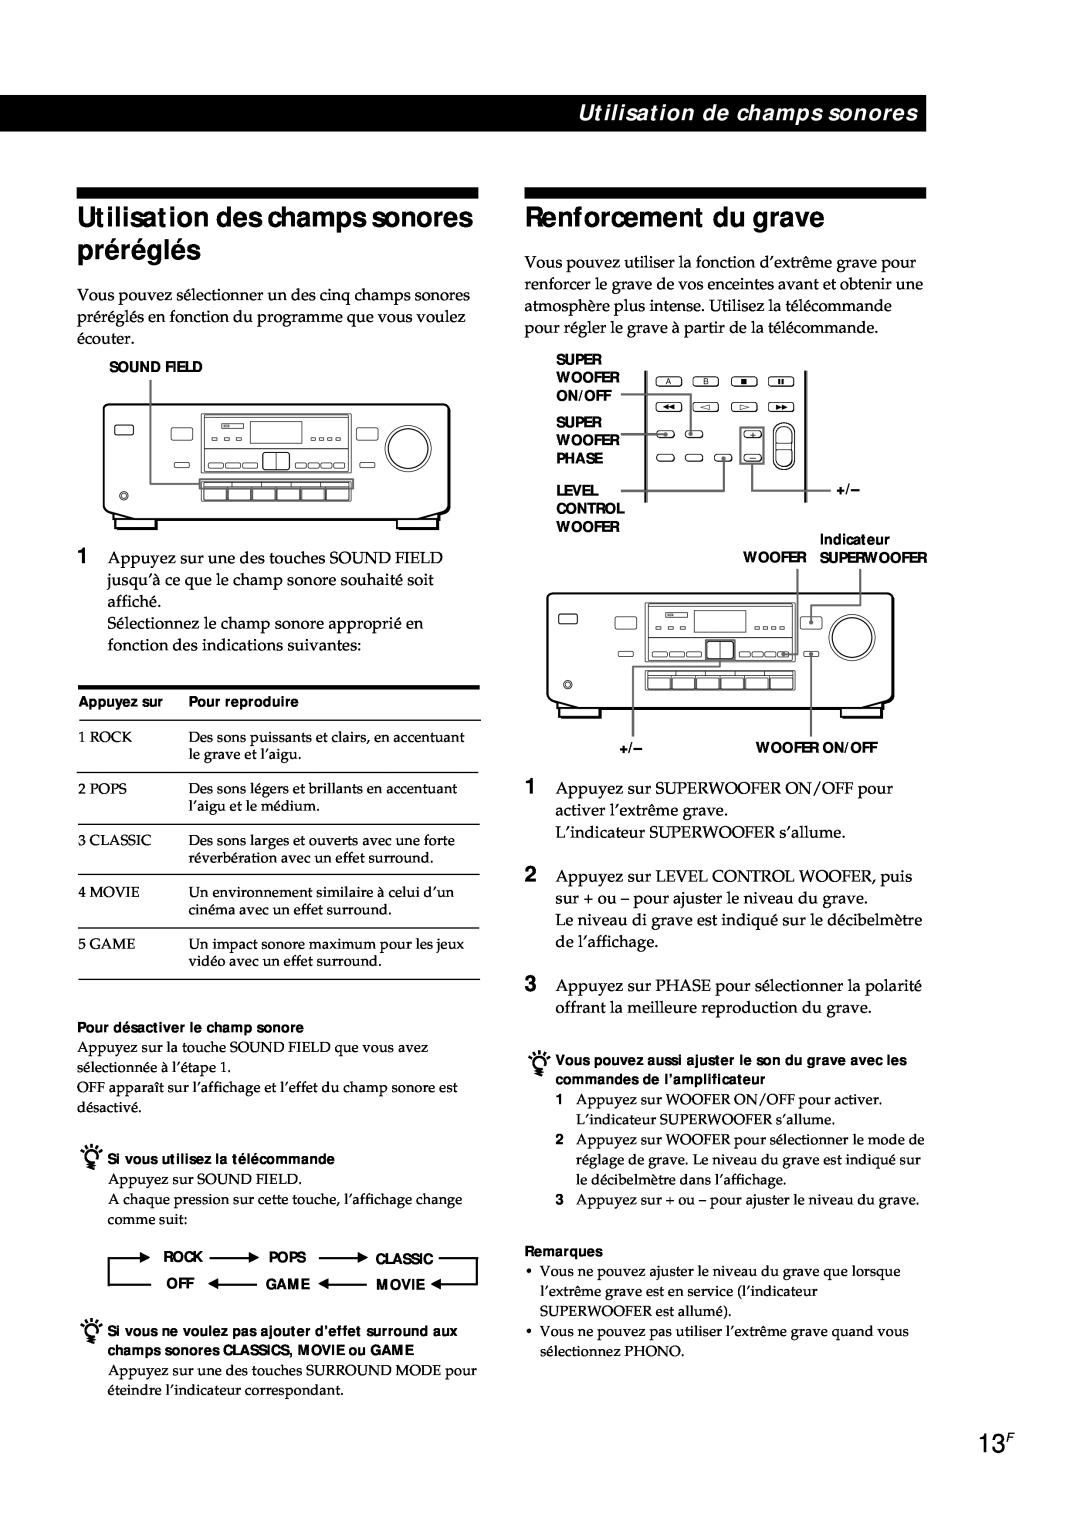 Sony TA-AV561A Utilisation des champs sonores préréglés, Renforcement du grave, Pour reproduire, Appuyez sur, Remarques 